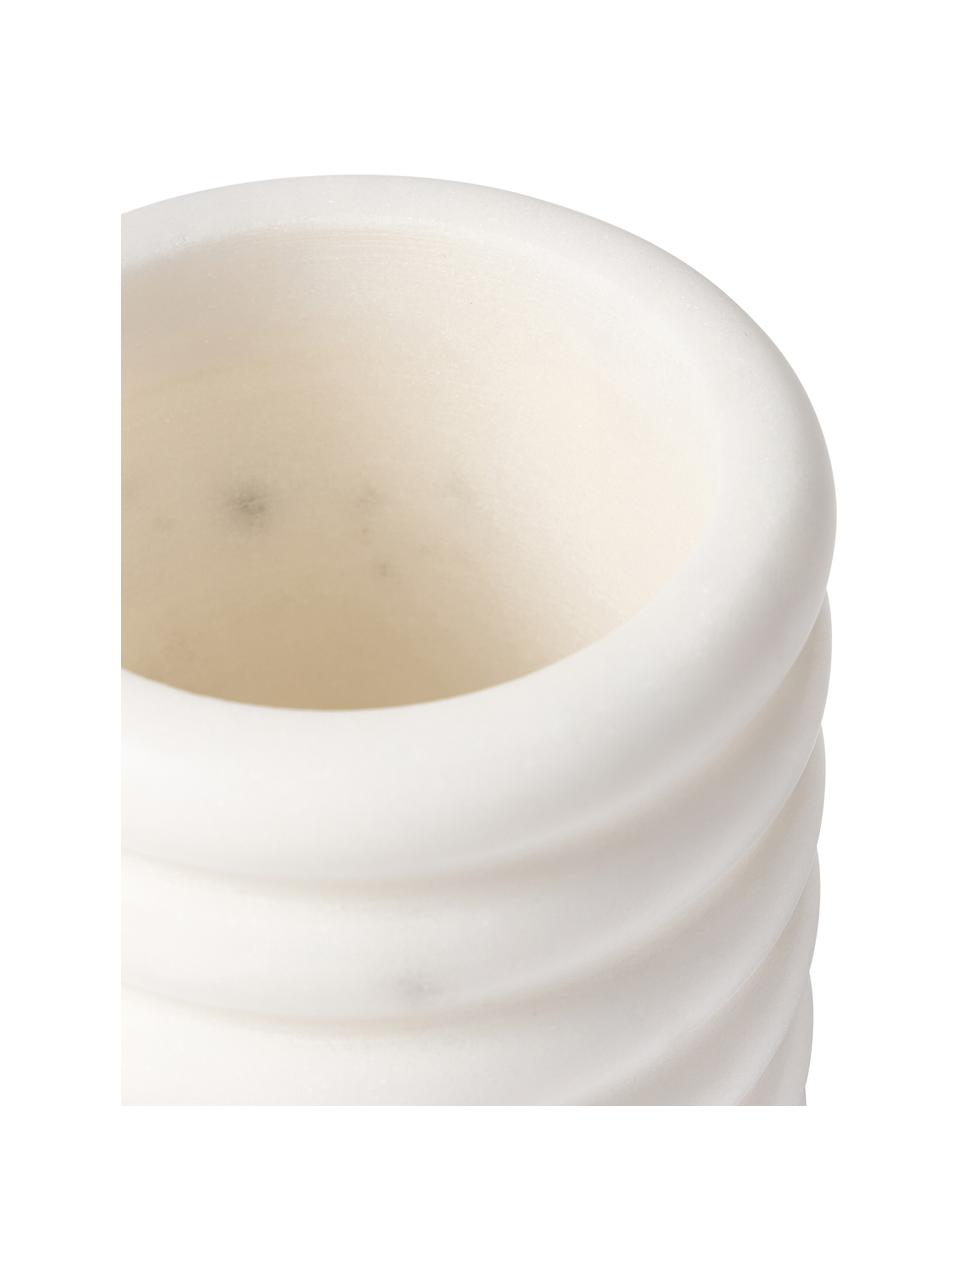 Mramorový pohár na zubné kefky Orta, Mramor, Biela, mramorovaná, Ø 8 x V 12 cm